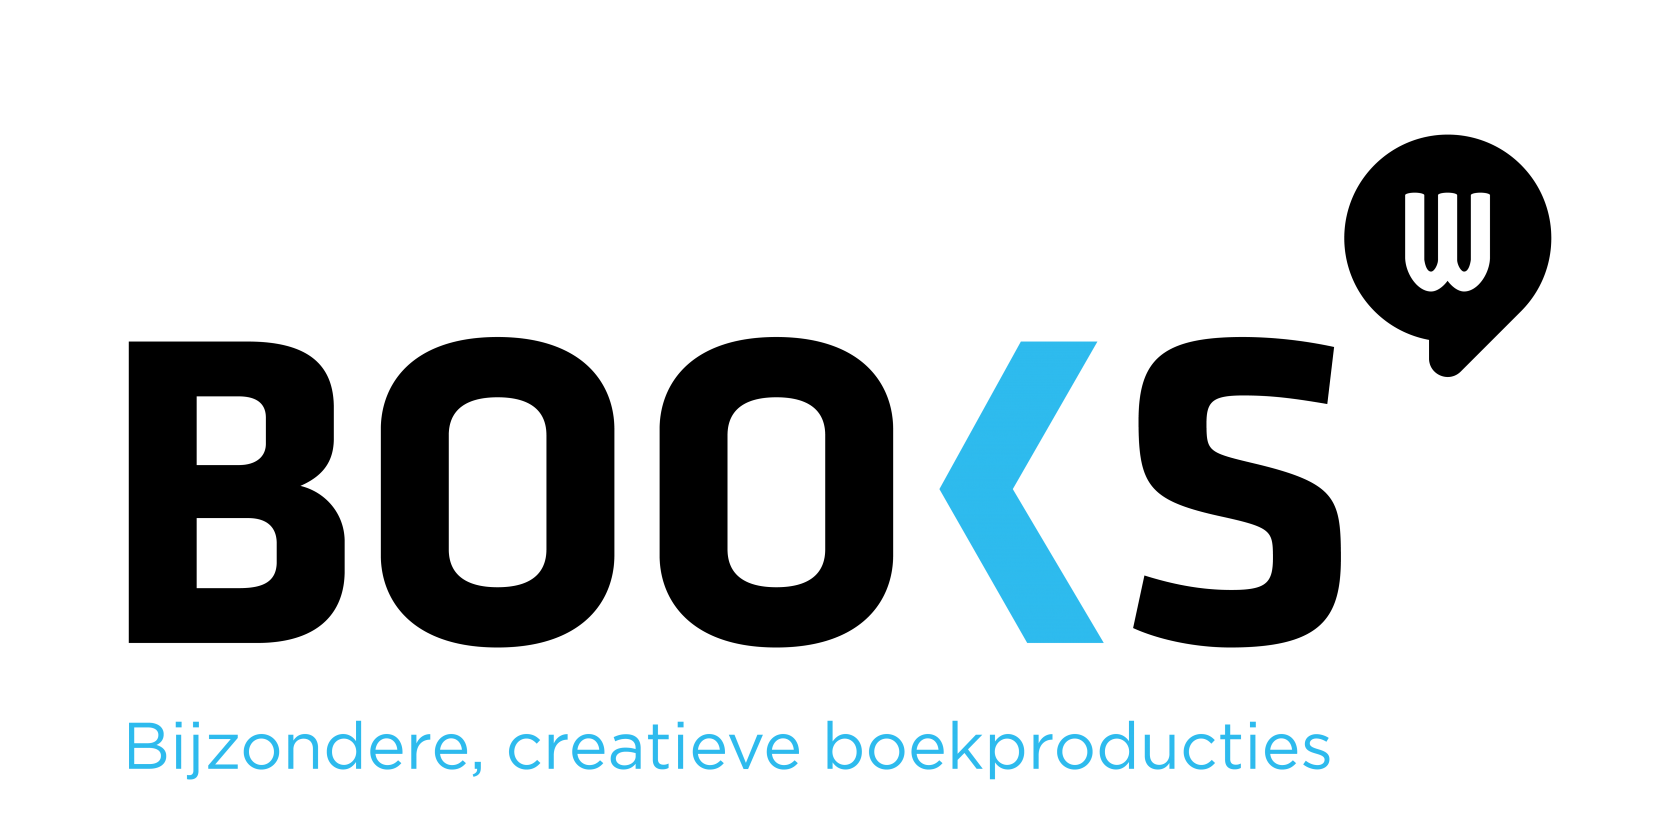 Booxs creatieve boekproducties